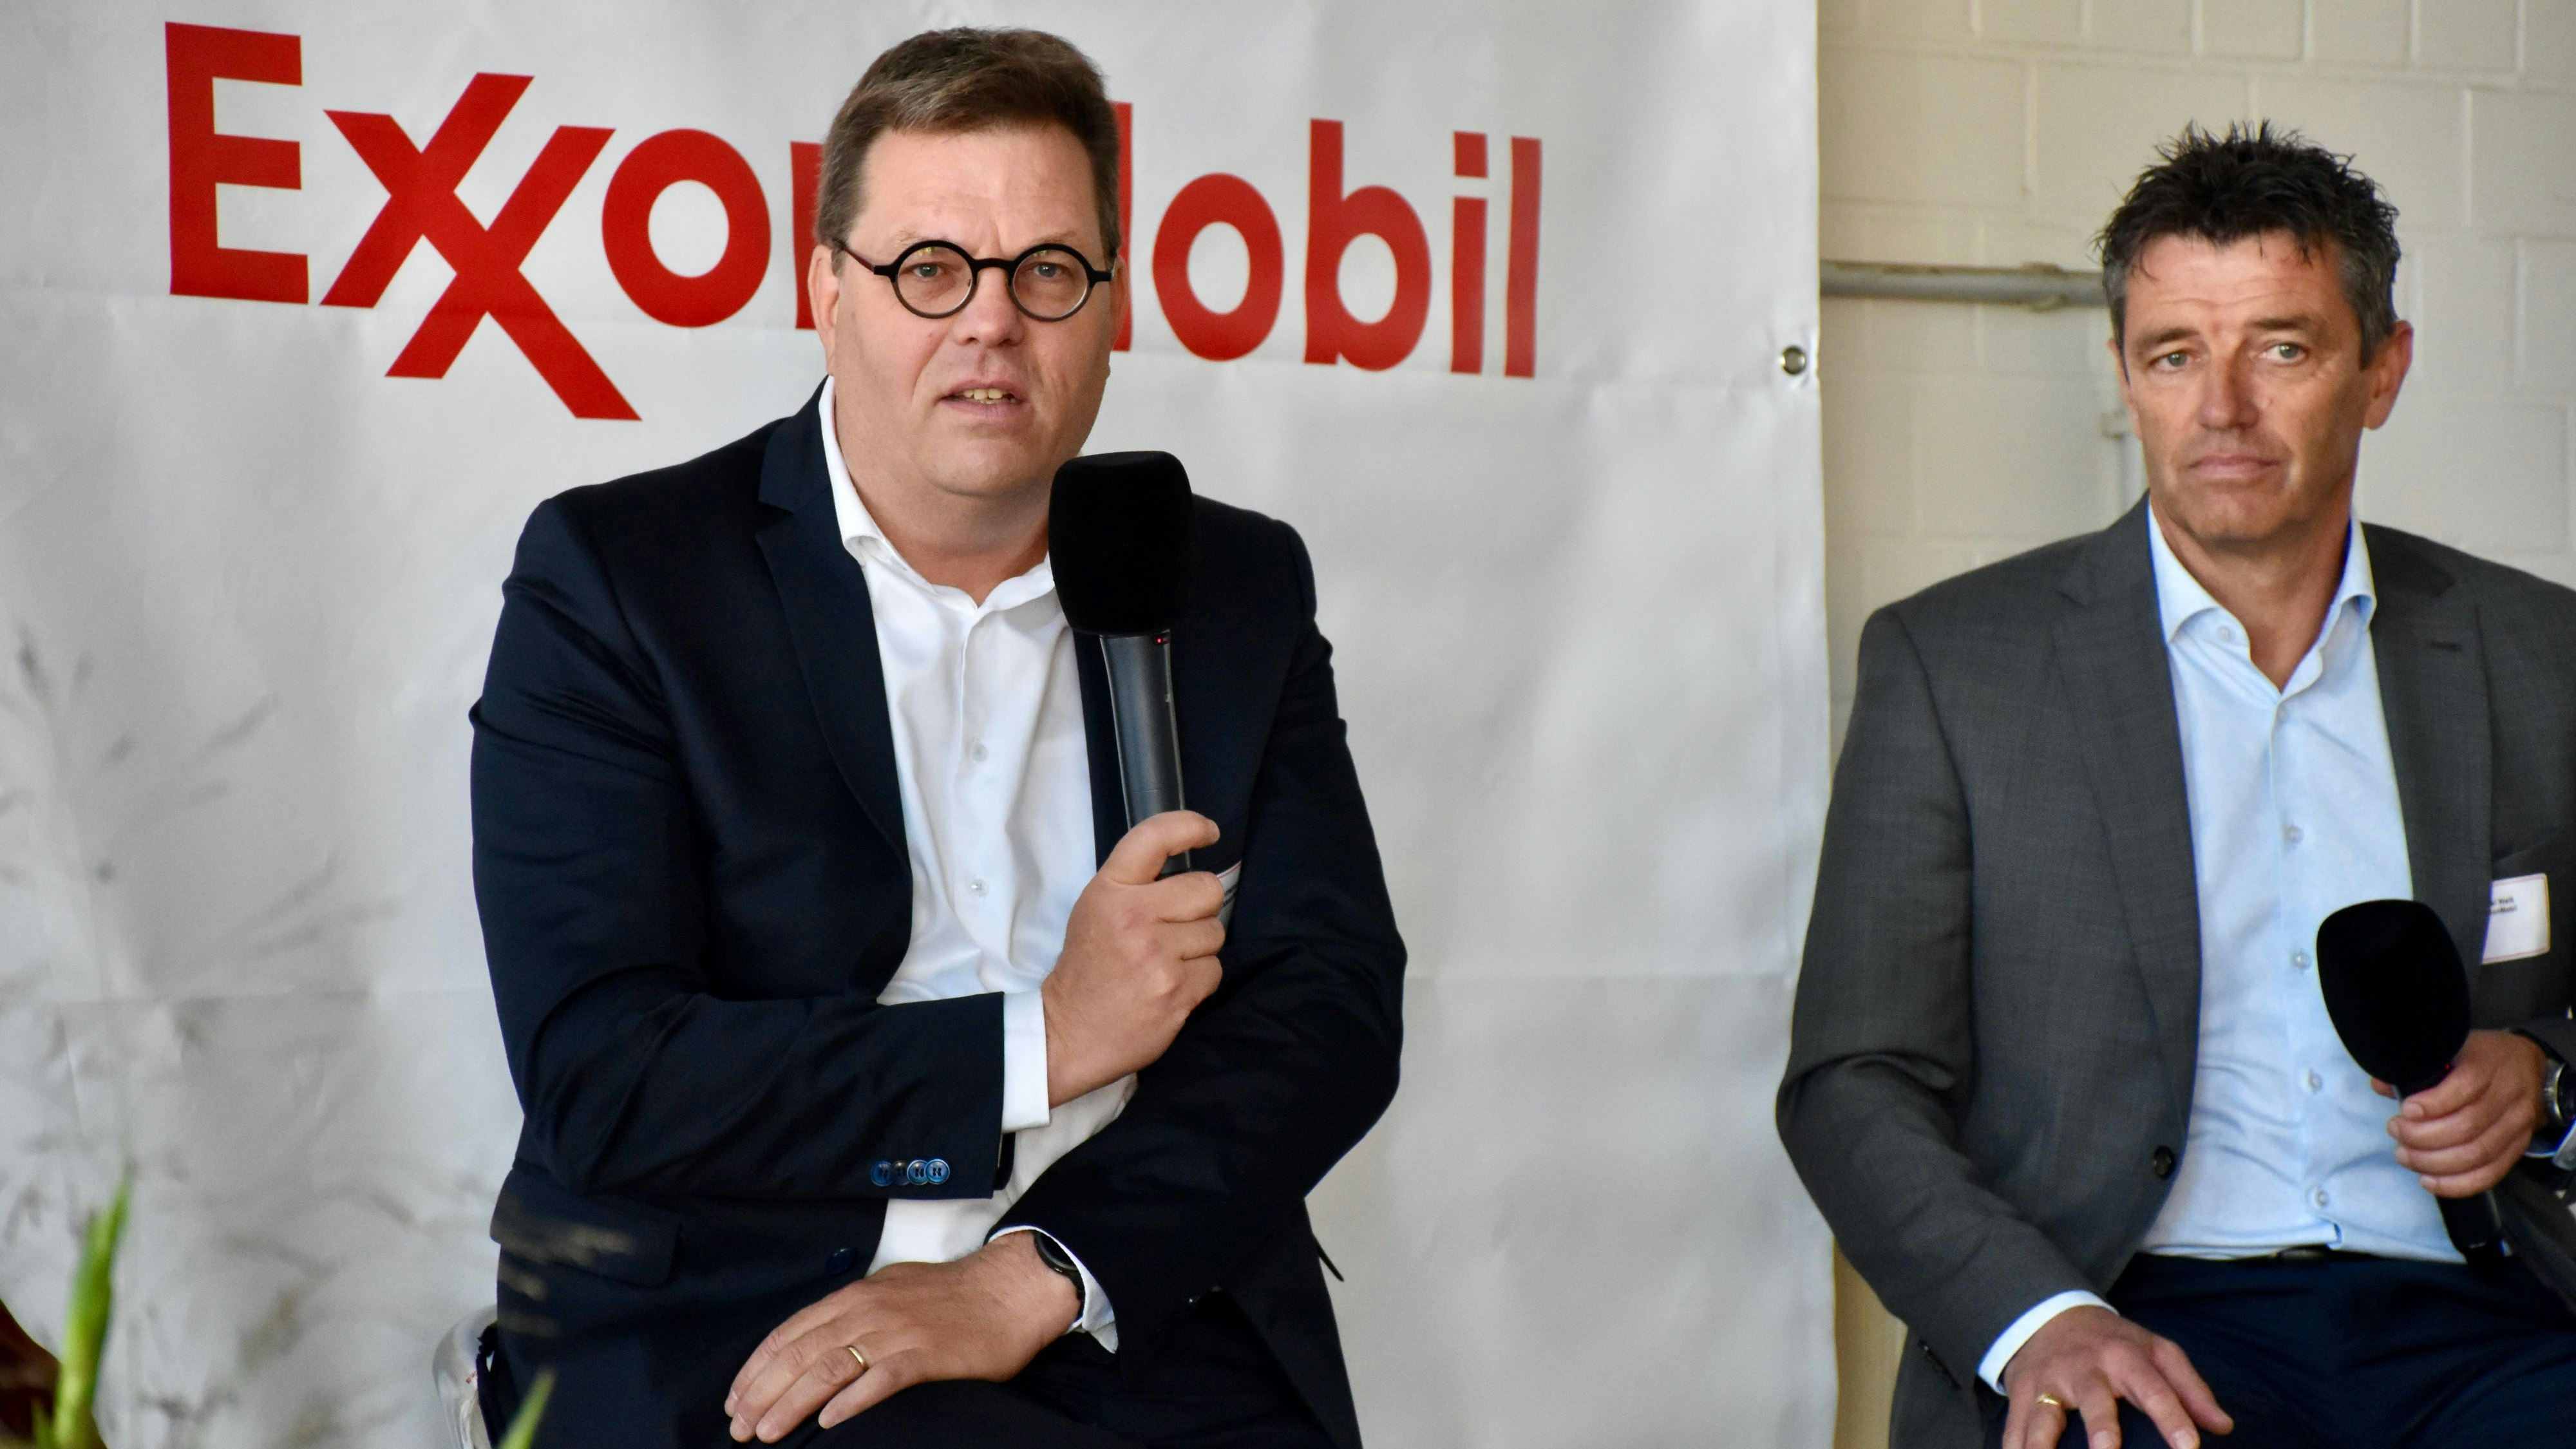 Jens-Christian Senger (links), Deutschland-Chef von ExxonMobil, hob die Vorzüge der heimischen Erdgasproduktion hervor. Rechts im Bild: Der technische Geschäftsführer von Exxon, Axel Weiß. Foto: Berg